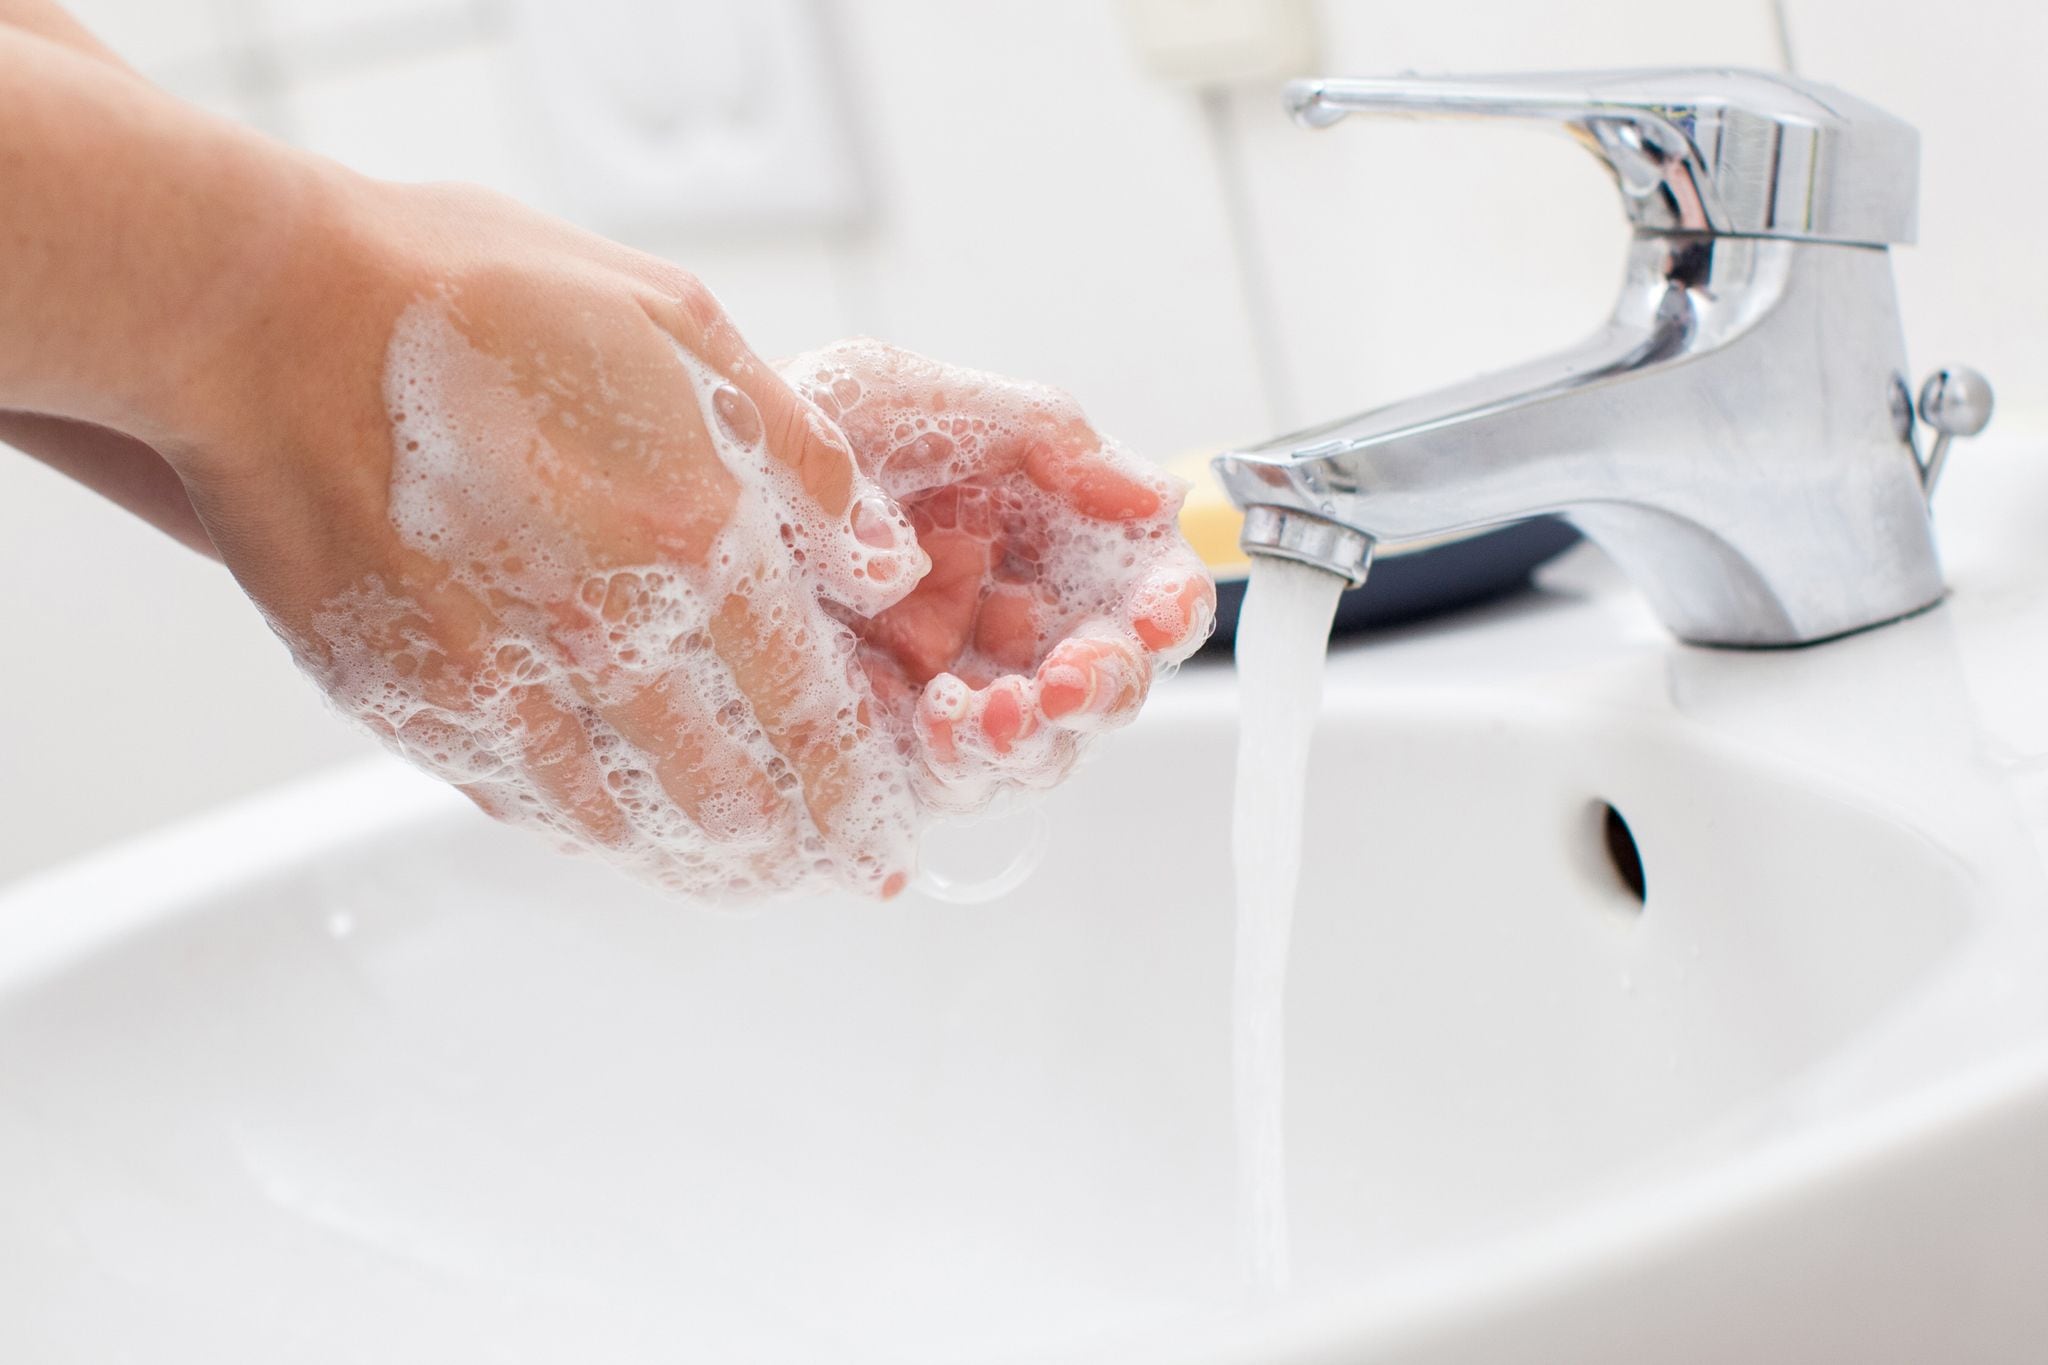 El lavado de manos frecuente y profundo con jabón contribuye a proteger ante estas enfermedades /Christin Klose/dpa